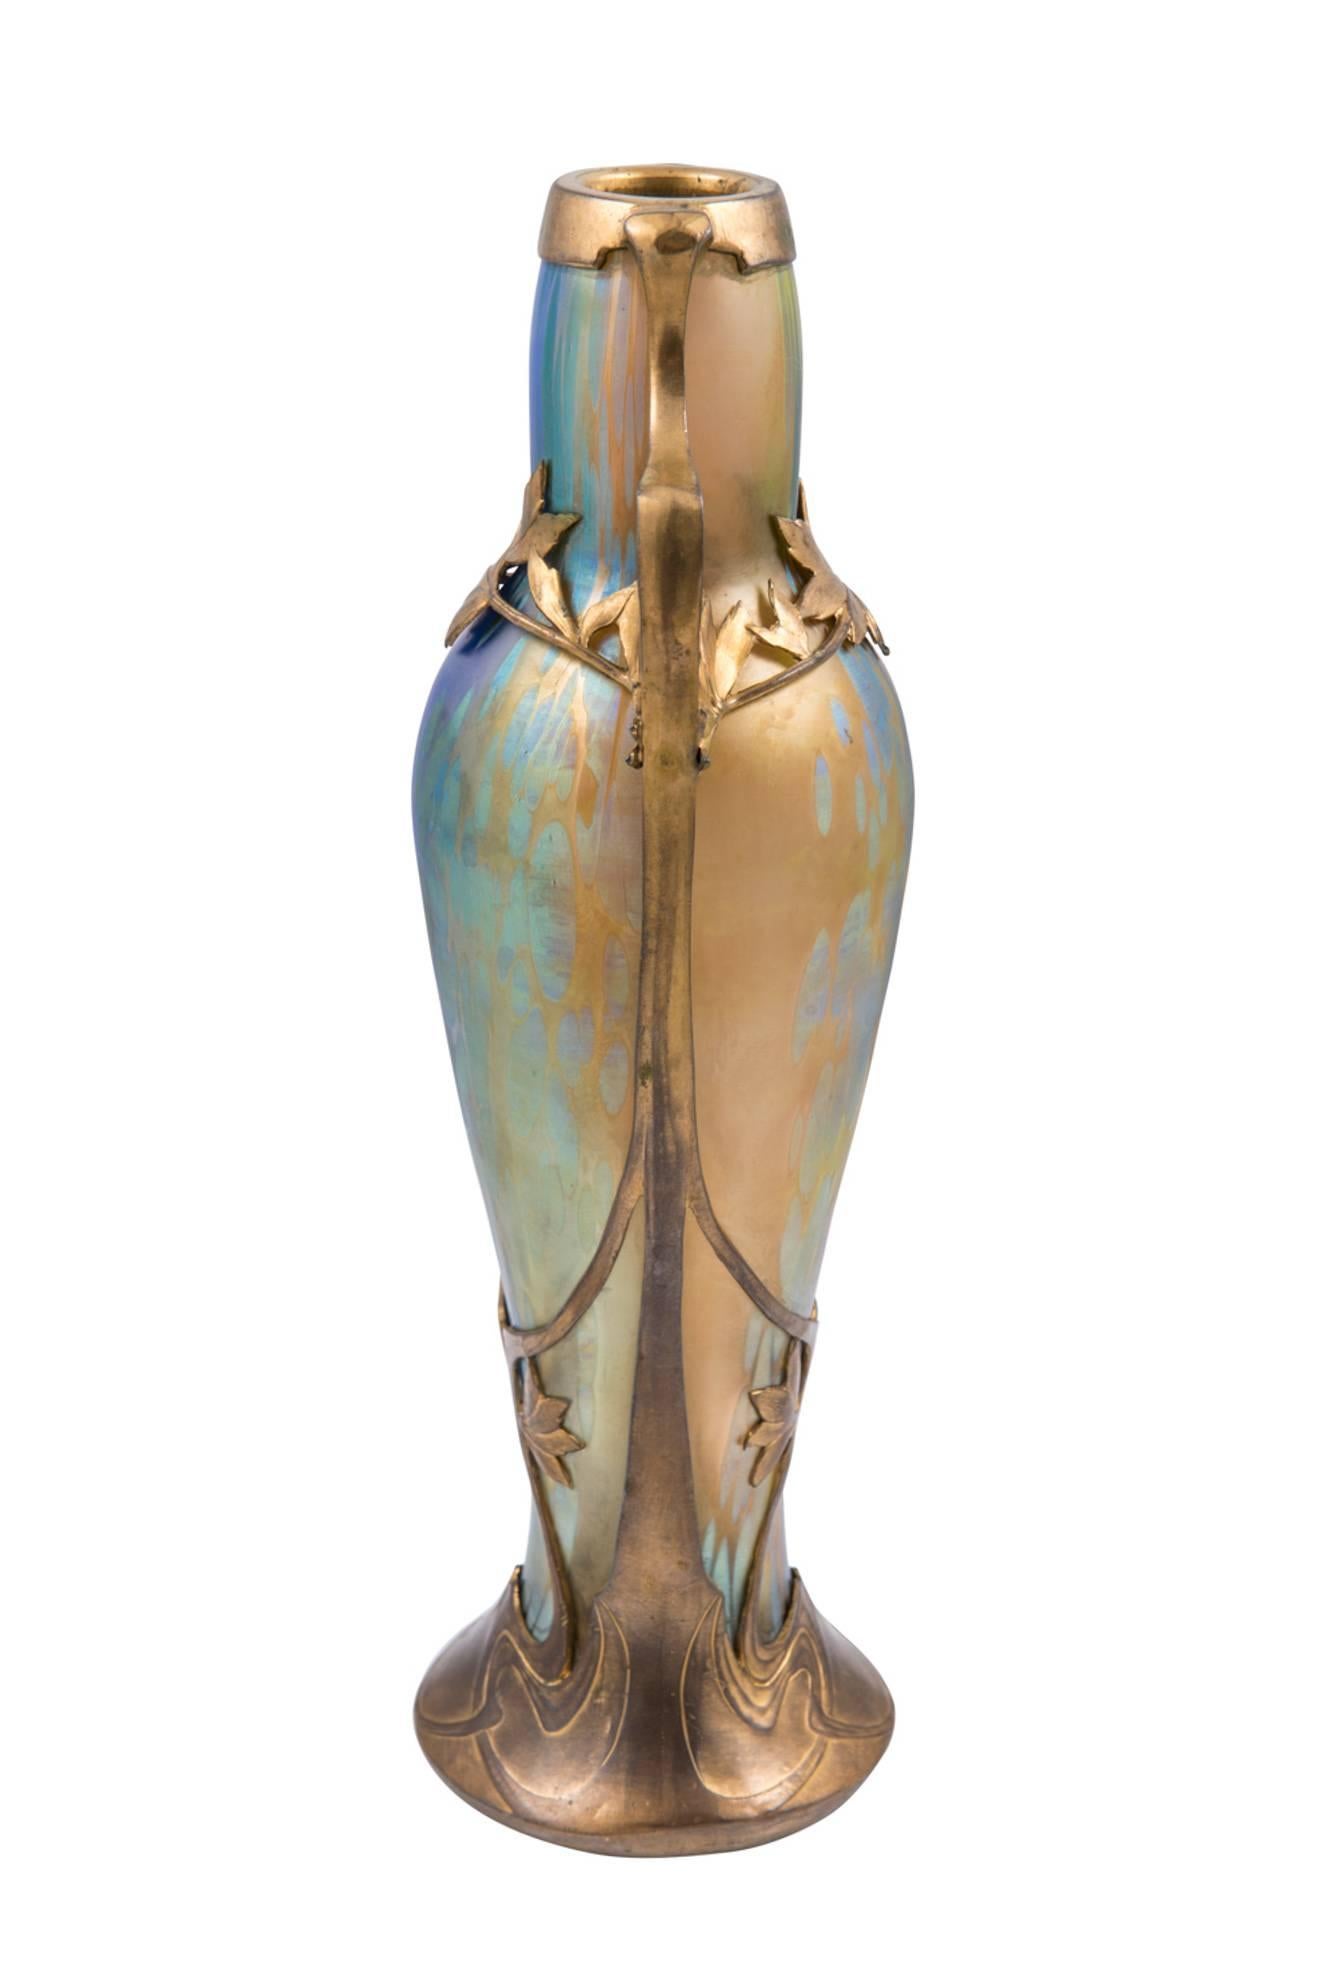 Art Deco Loetz, Extraordinary Vase, Phenomen Gre 299, 